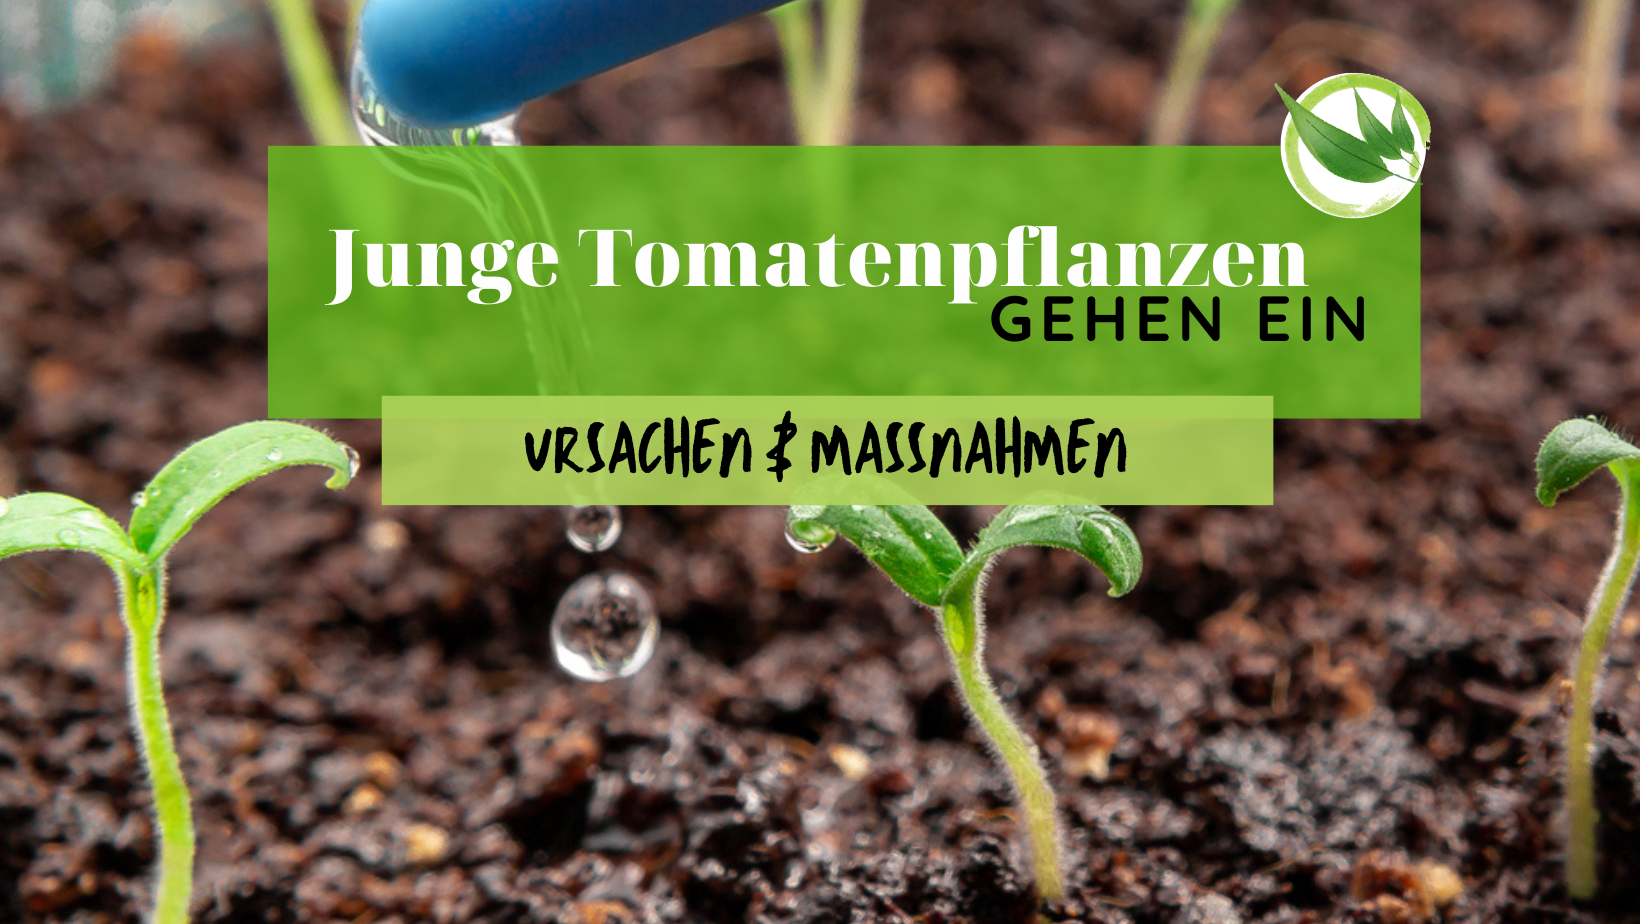 Junge Tomatenpflanzen gehen ein – Ursachen & Maßnahmen